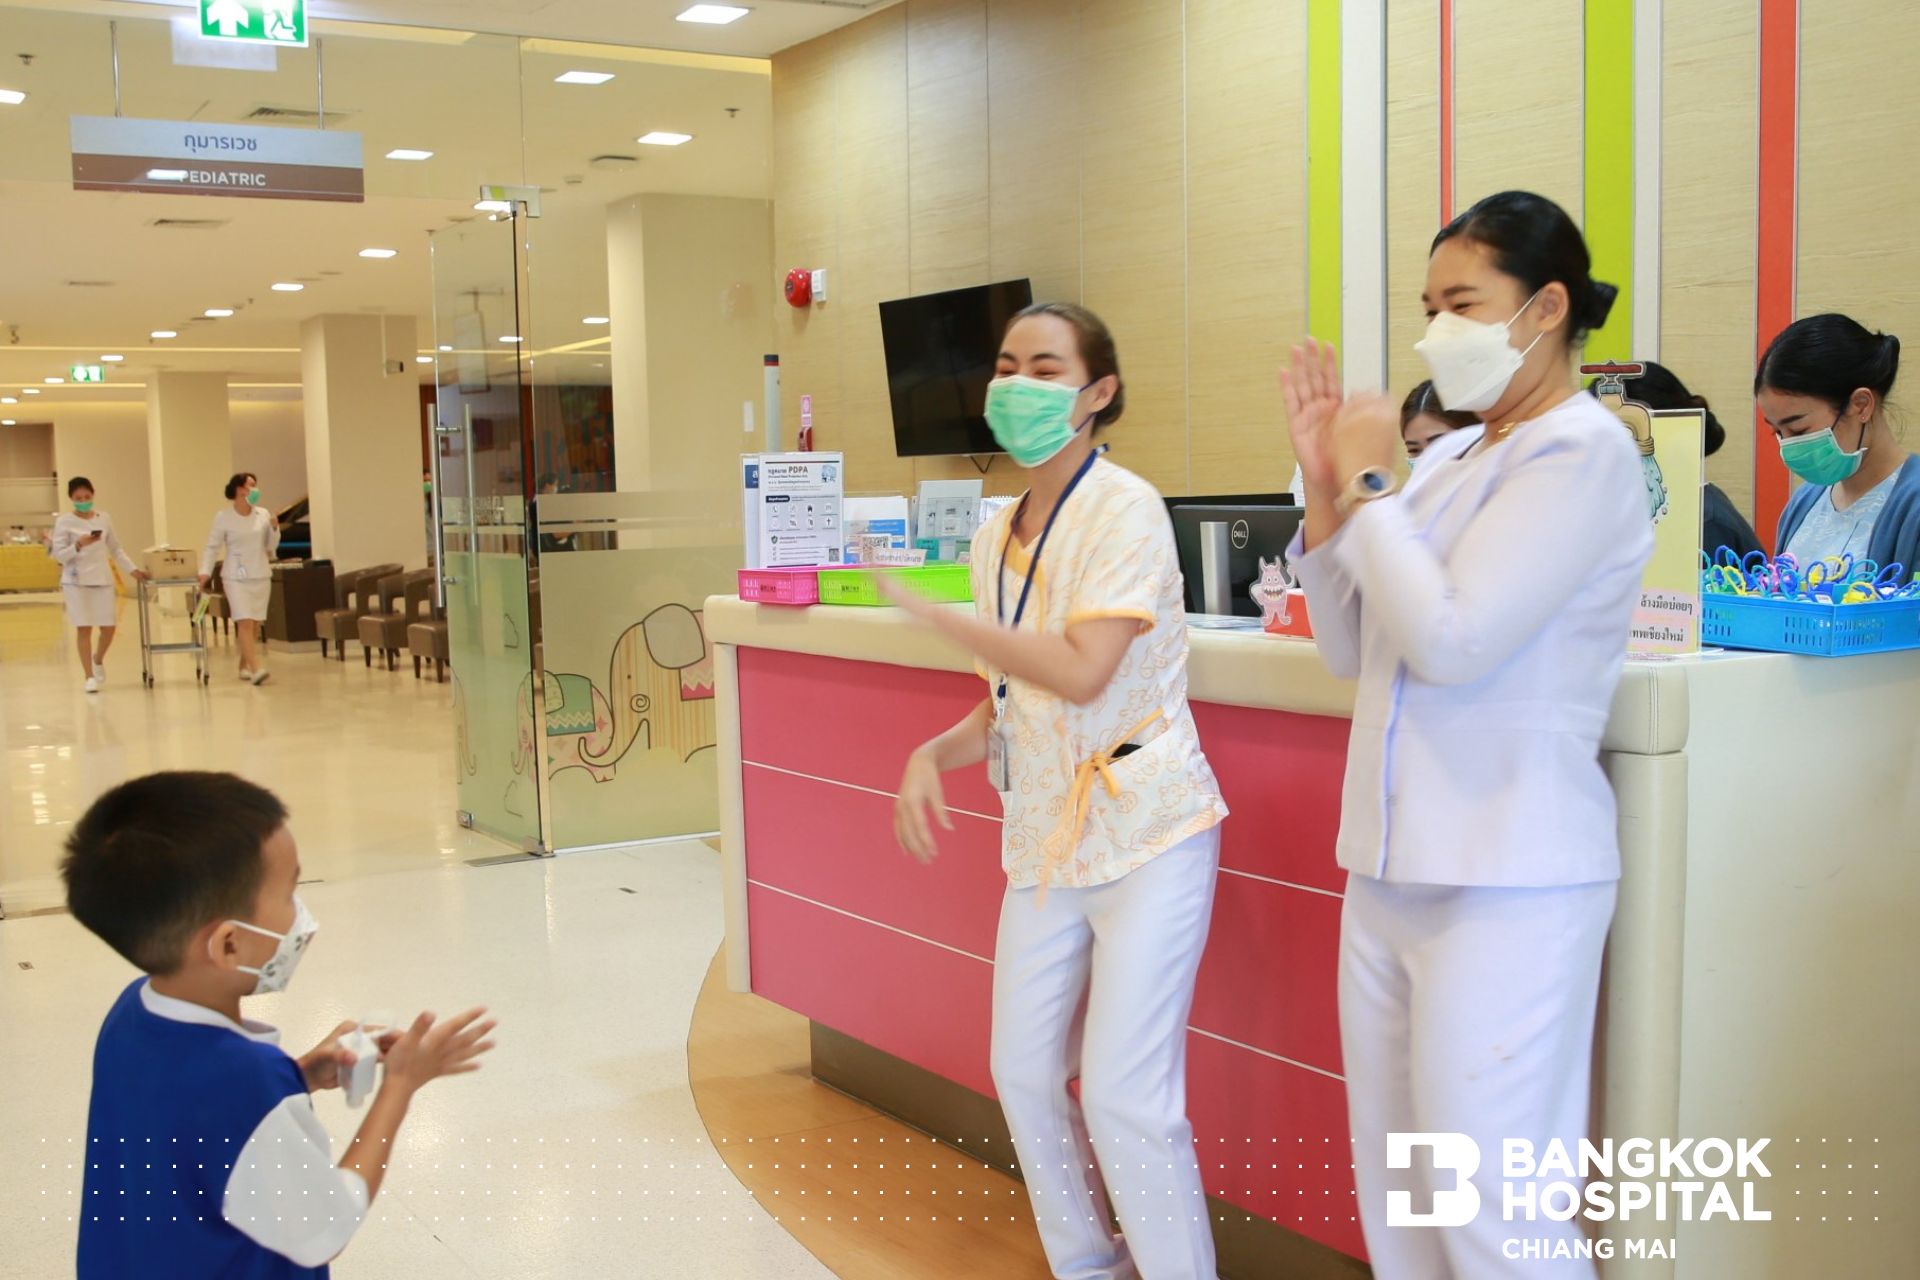 กิจกรรมการล้างมือที่ถูกต้อง - โรงพยาบาลกรุงเทพเชียงใหม่